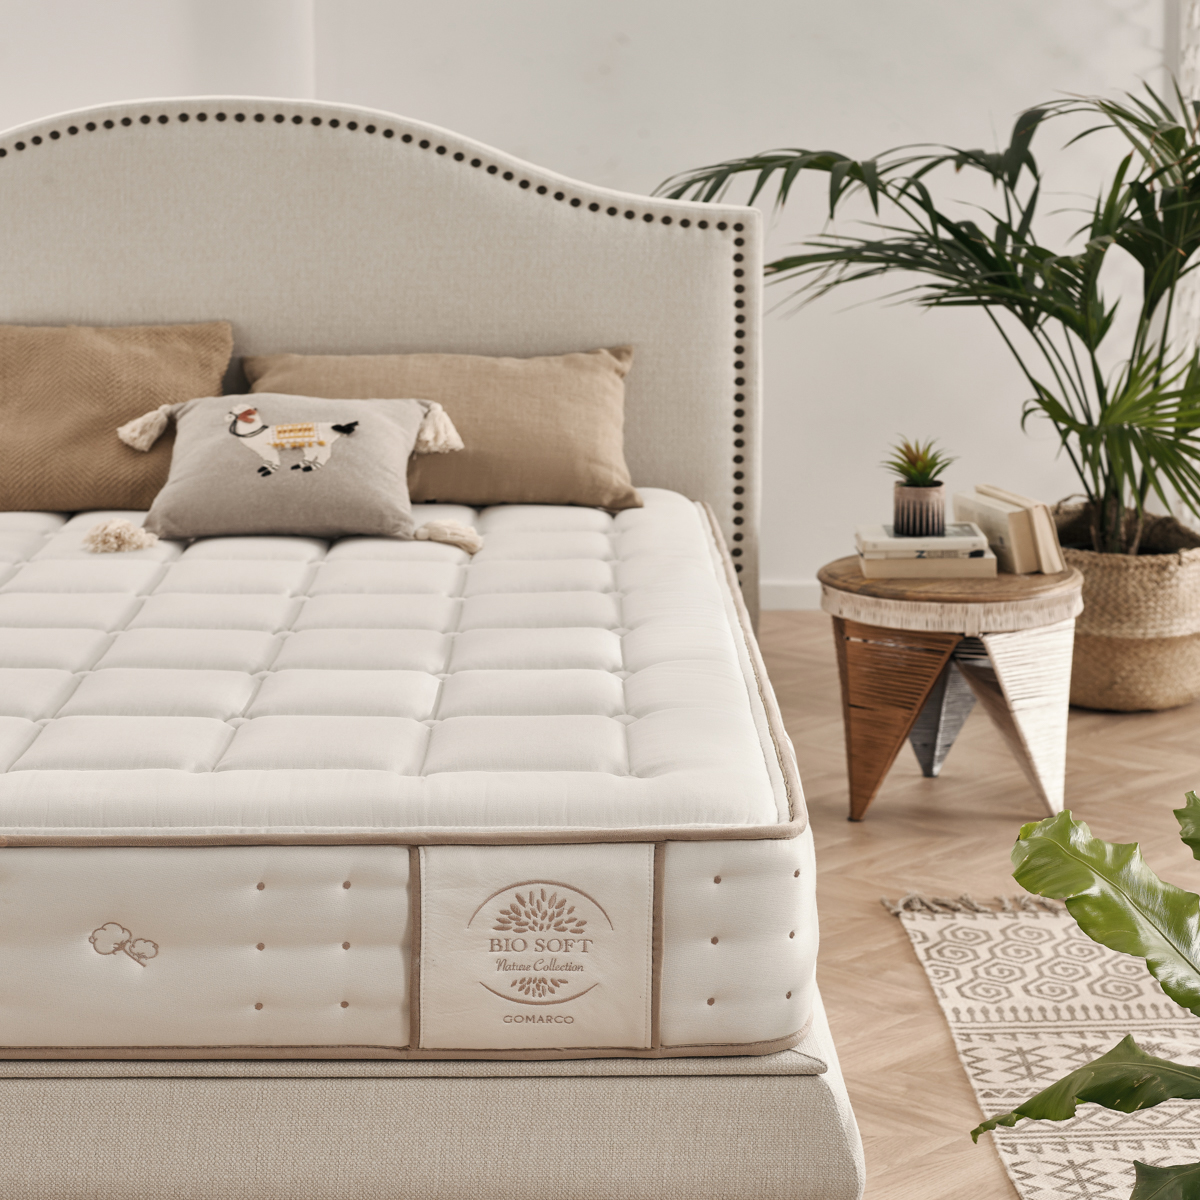 gomarco-bio-soft-mattress